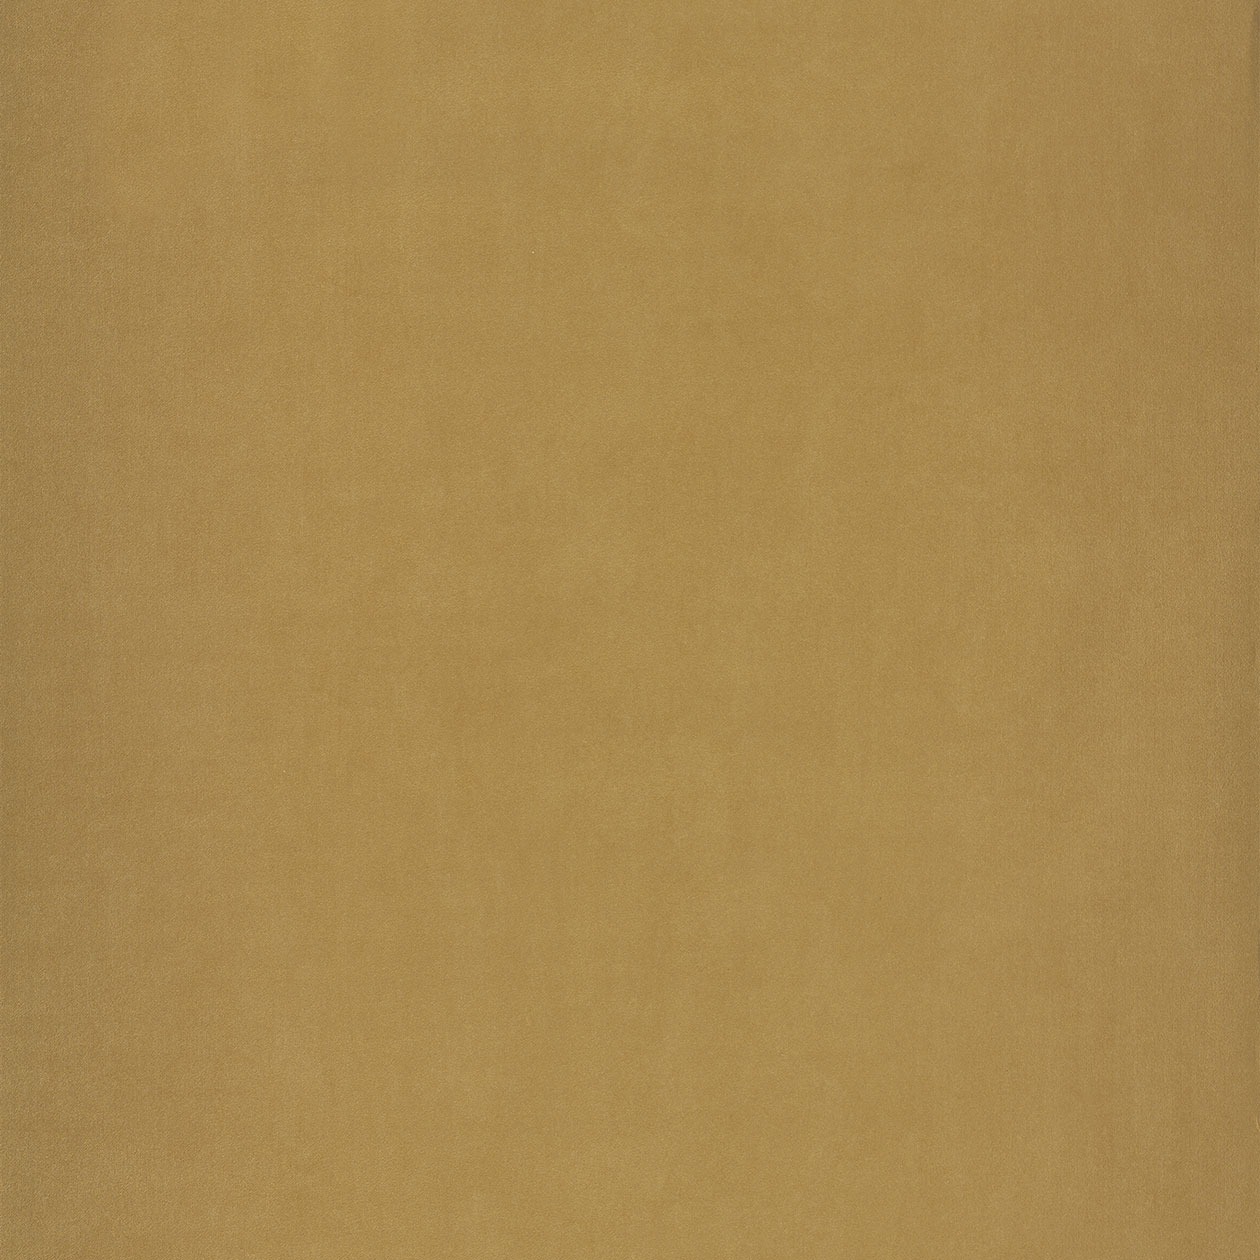 Caselio barnas egyszínű gyerek tapéta